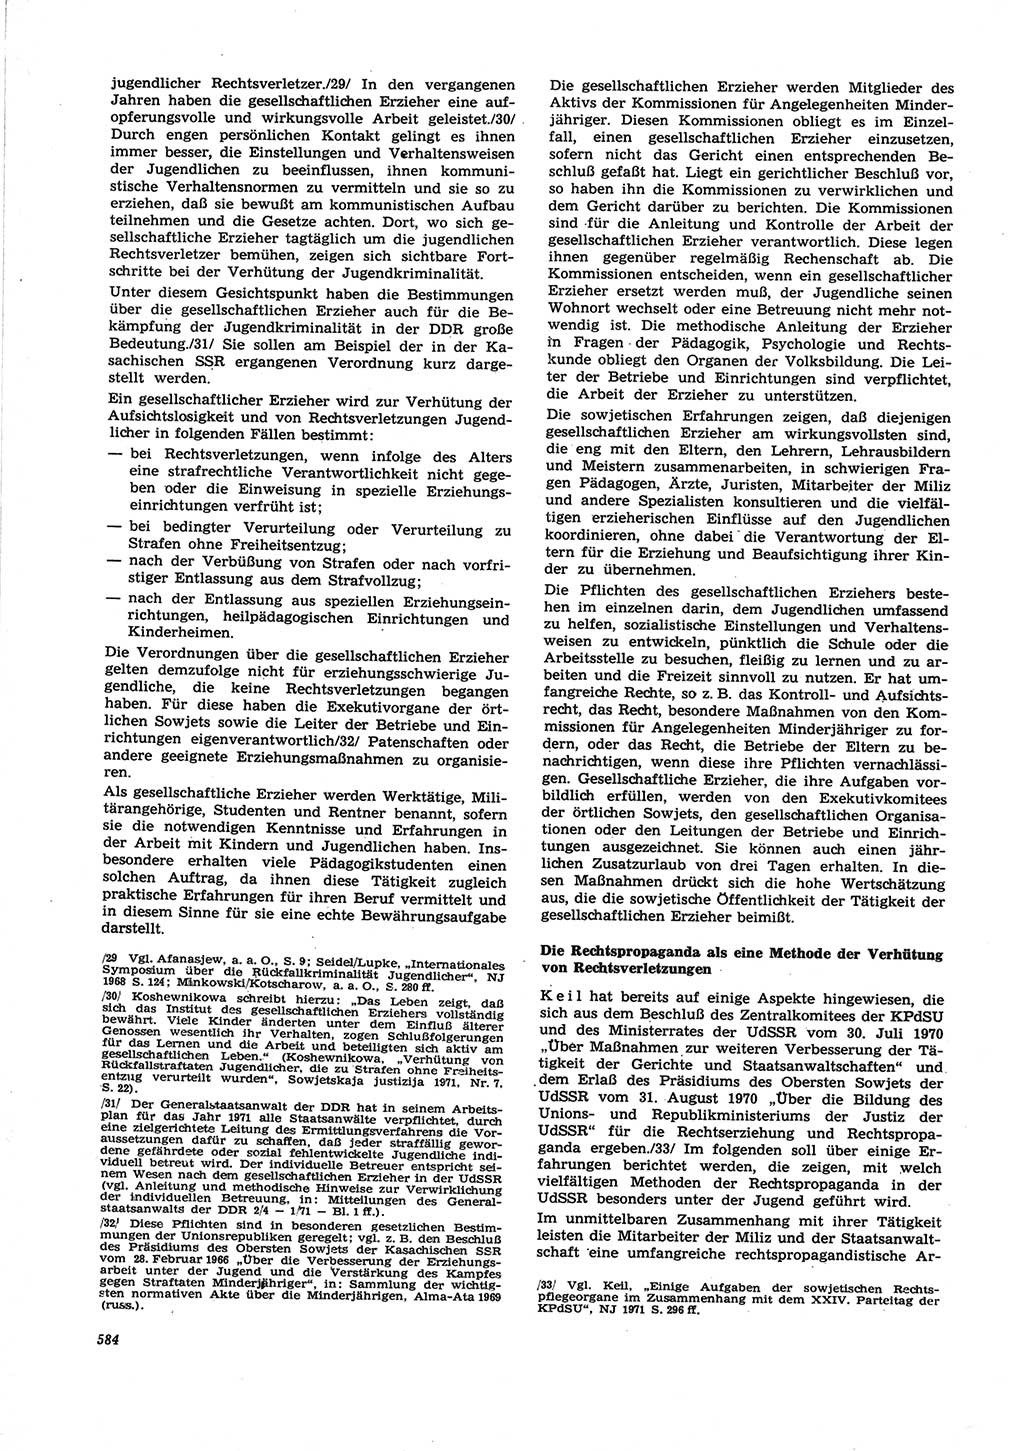 Neue Justiz (NJ), Zeitschrift für Recht und Rechtswissenschaft [Deutsche Demokratische Republik (DDR)], 25. Jahrgang 1971, Seite 584 (NJ DDR 1971, S. 584)